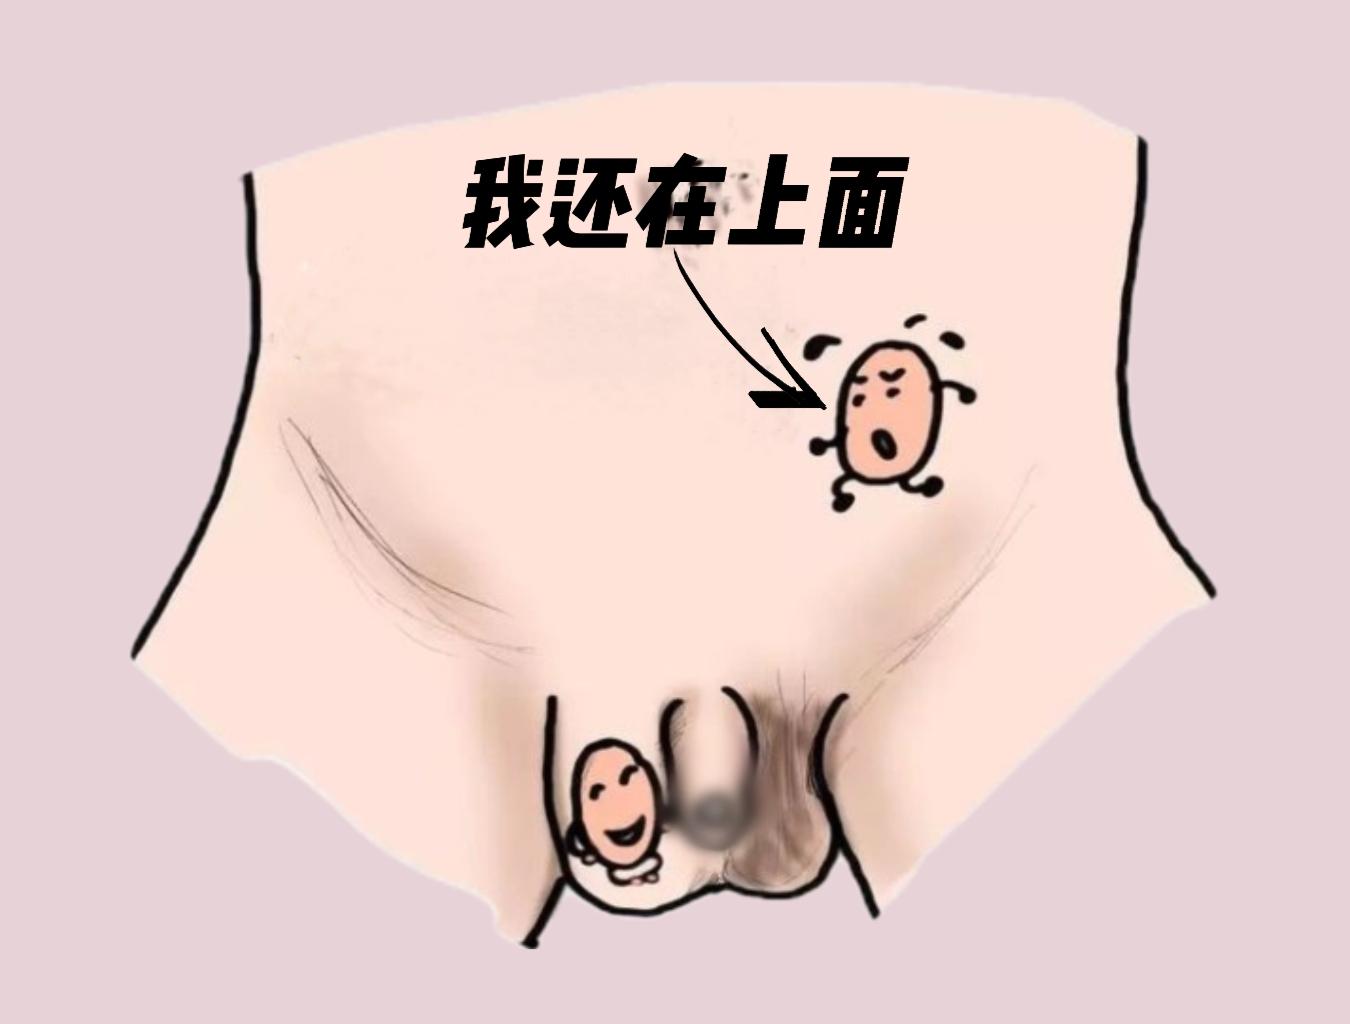 男孩出生时,正常情况下左右阴囊内各有一个睾丸,如果出现睾丸下降不全